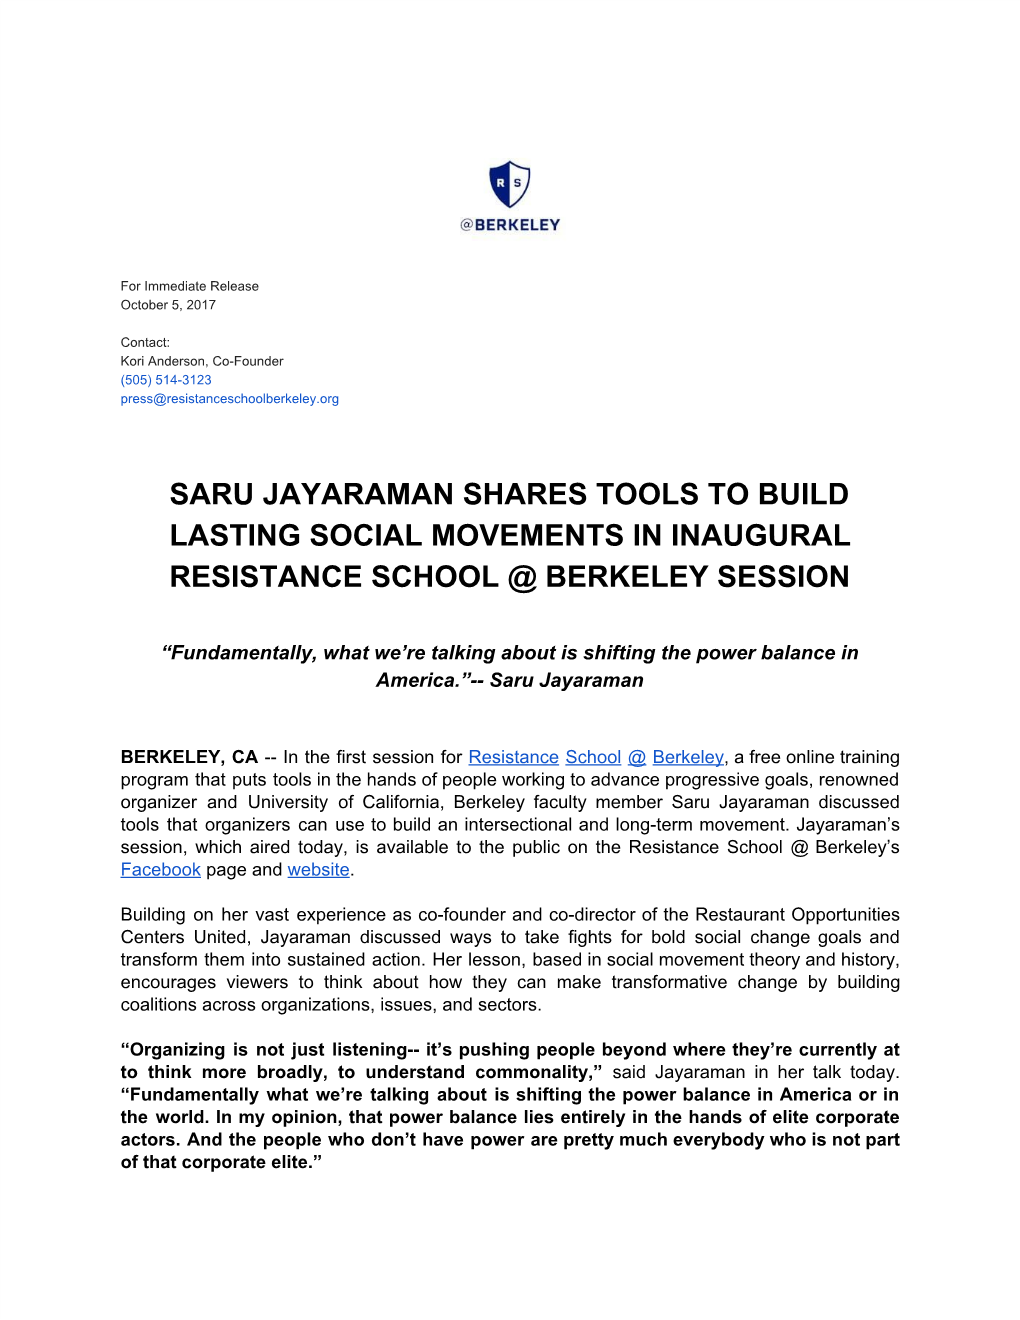 Saru Jayaraman Shares Tools to Build Lasting Social Movements In